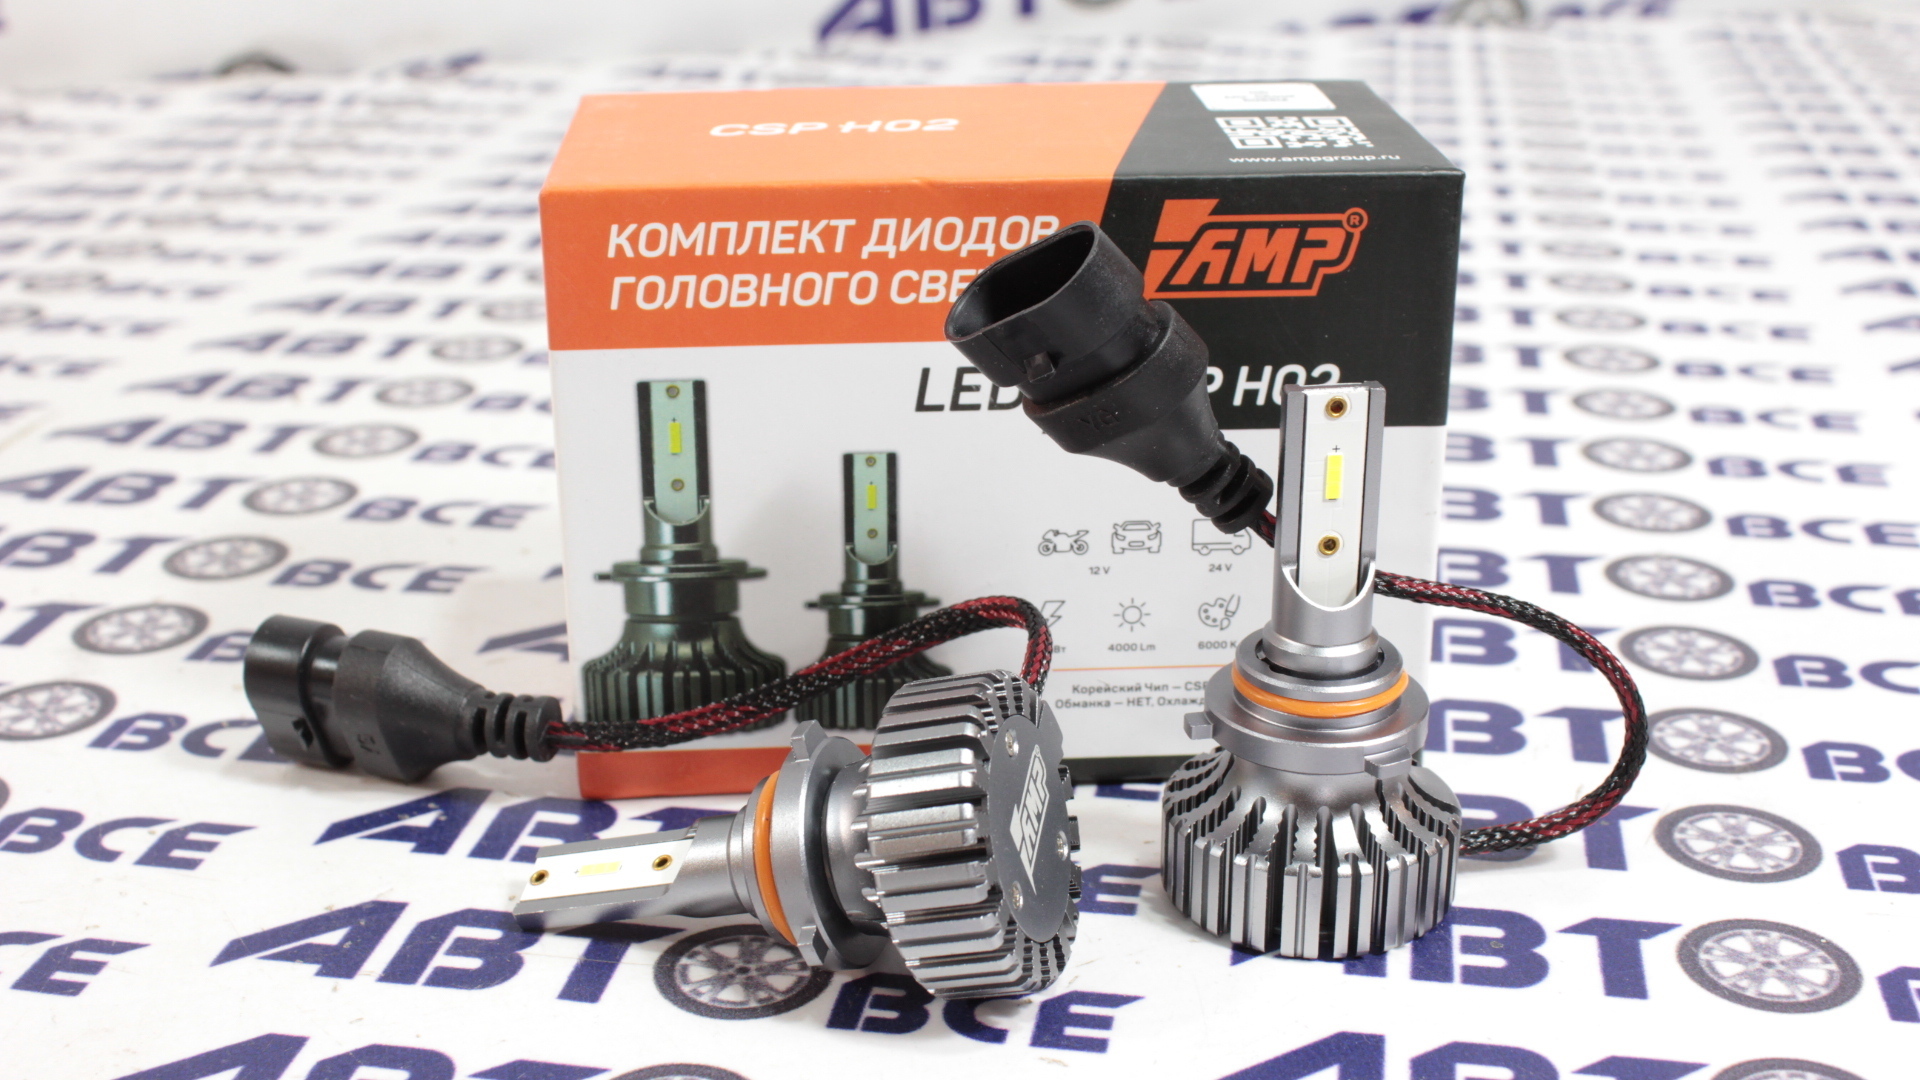 Лампа фары LED - диодная HB4 (1шт) CSP H02s AMP